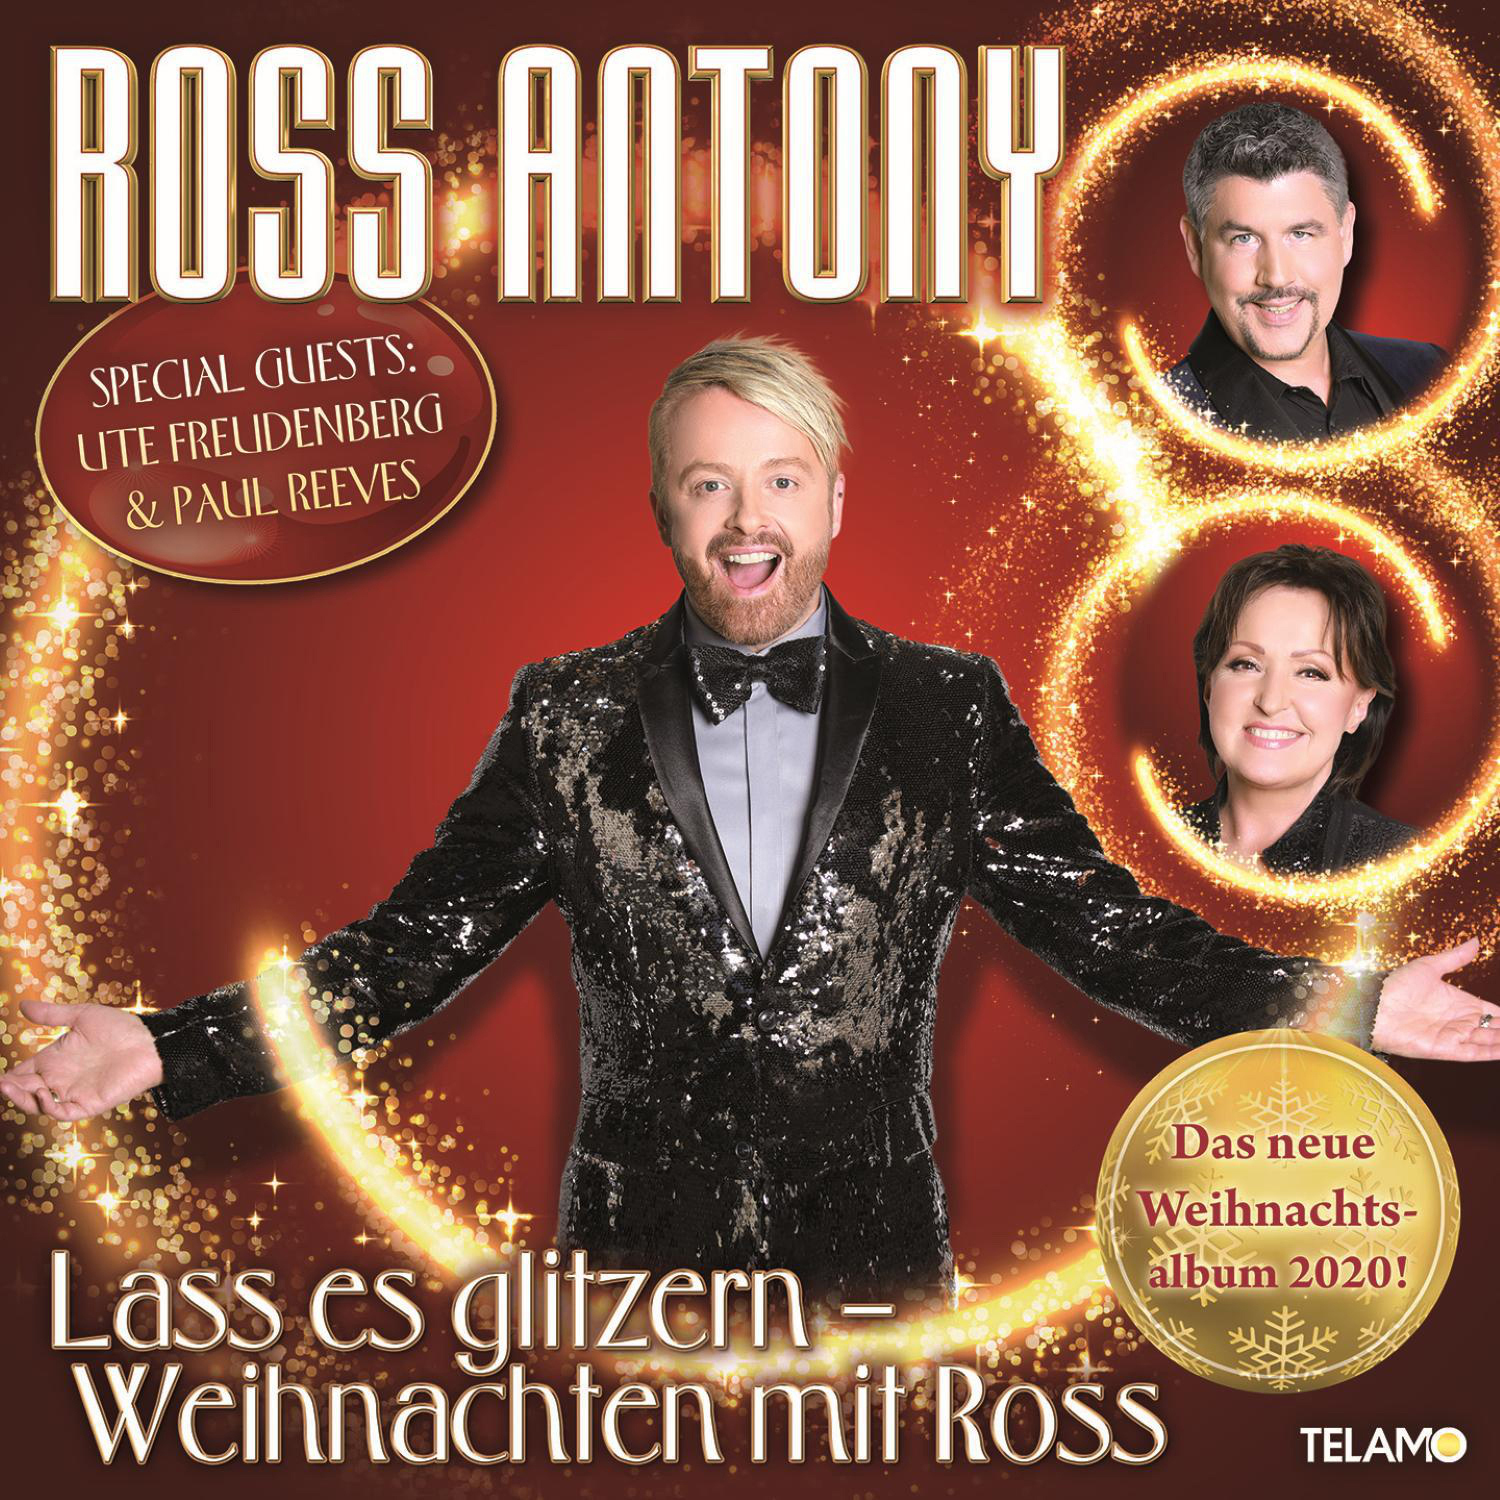 Lass Antony mit - - Ross (CD) Ross glitzern:Weihnachten es